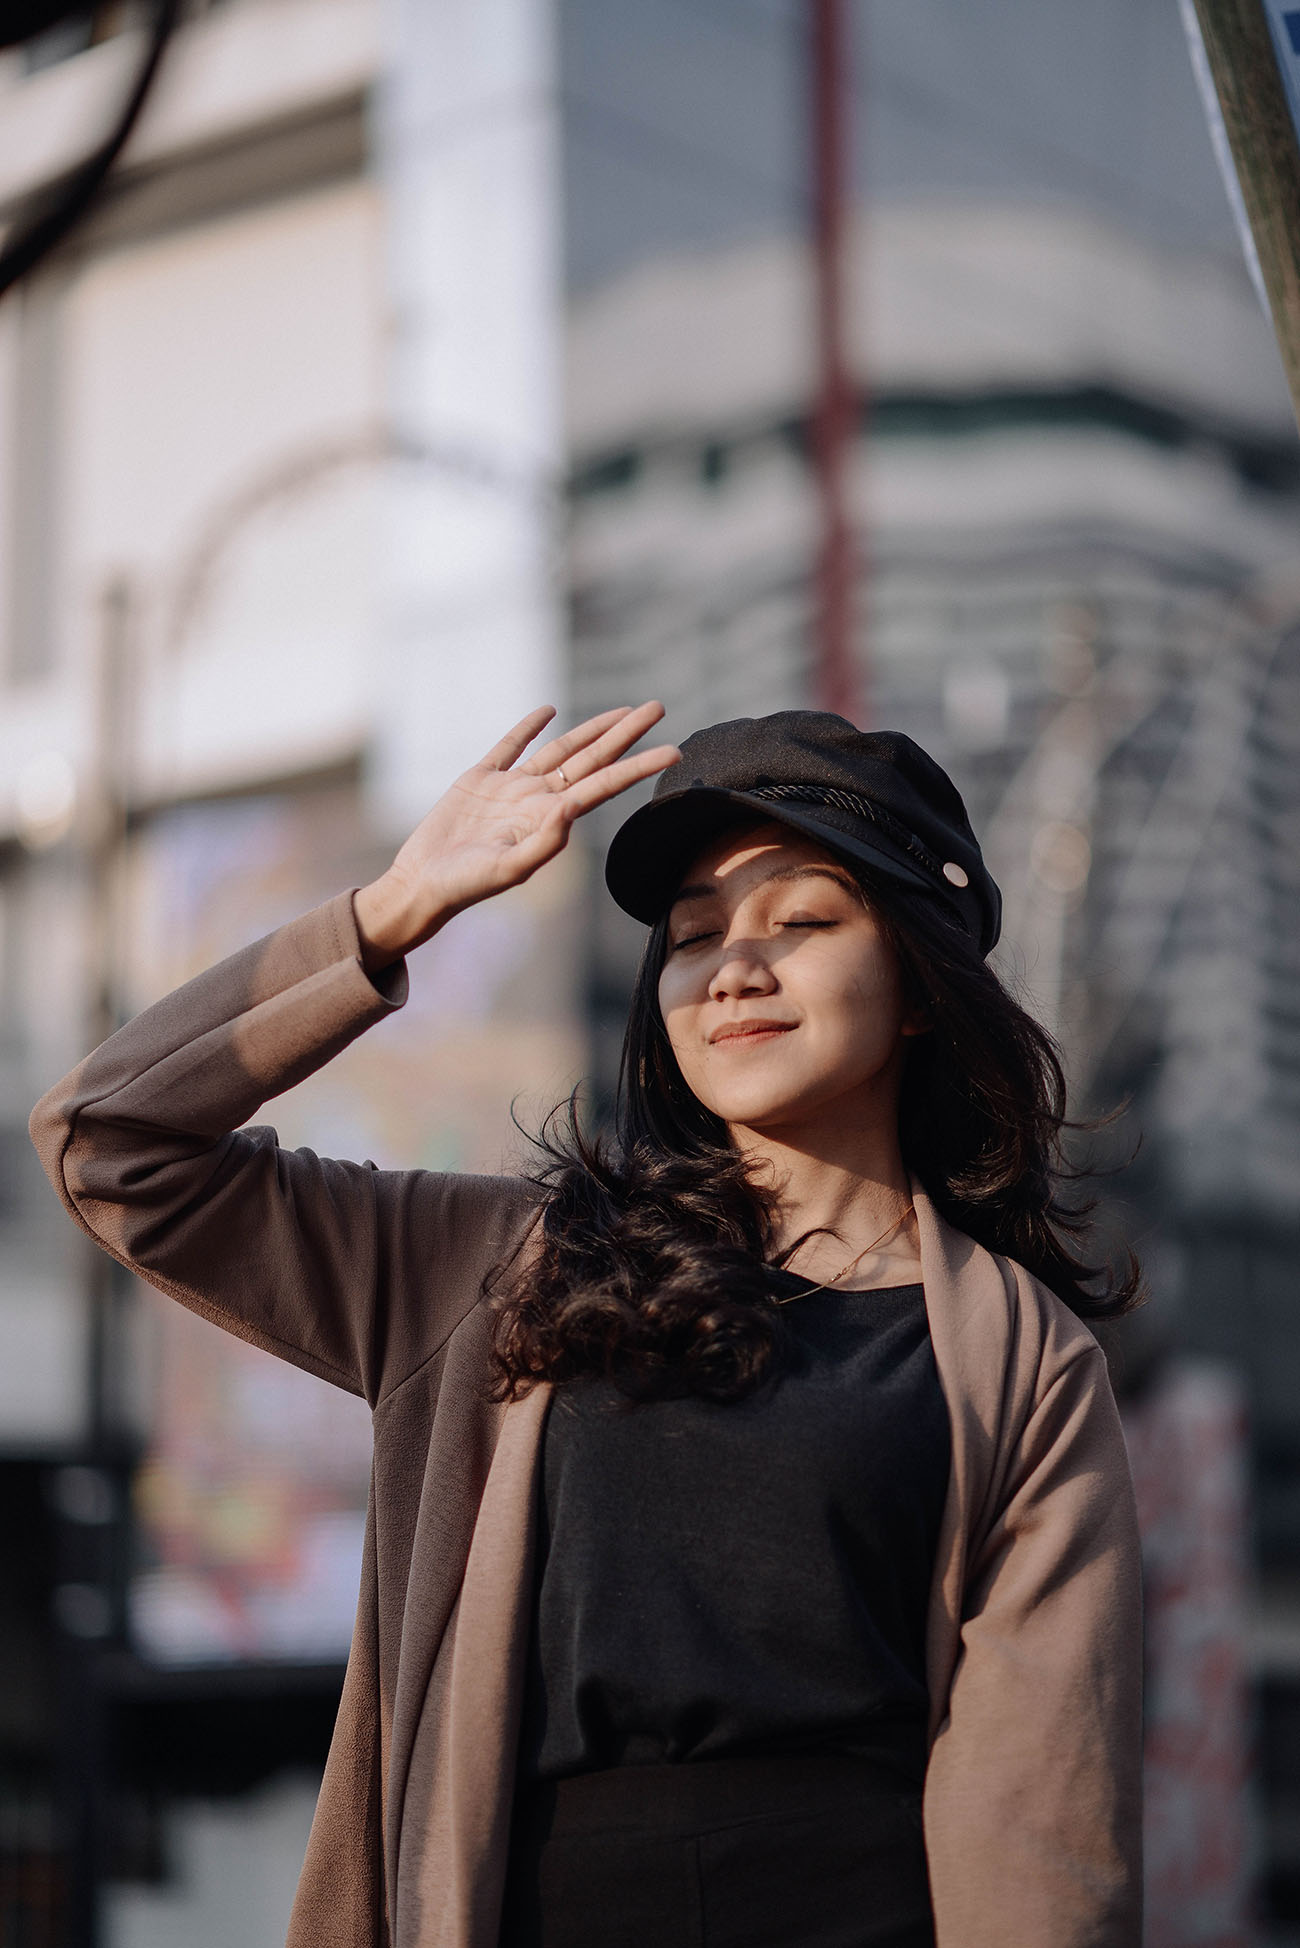 cung hoàng đạo cô gái che mắt đội mũ đen Pexels / Arya Reddejavu